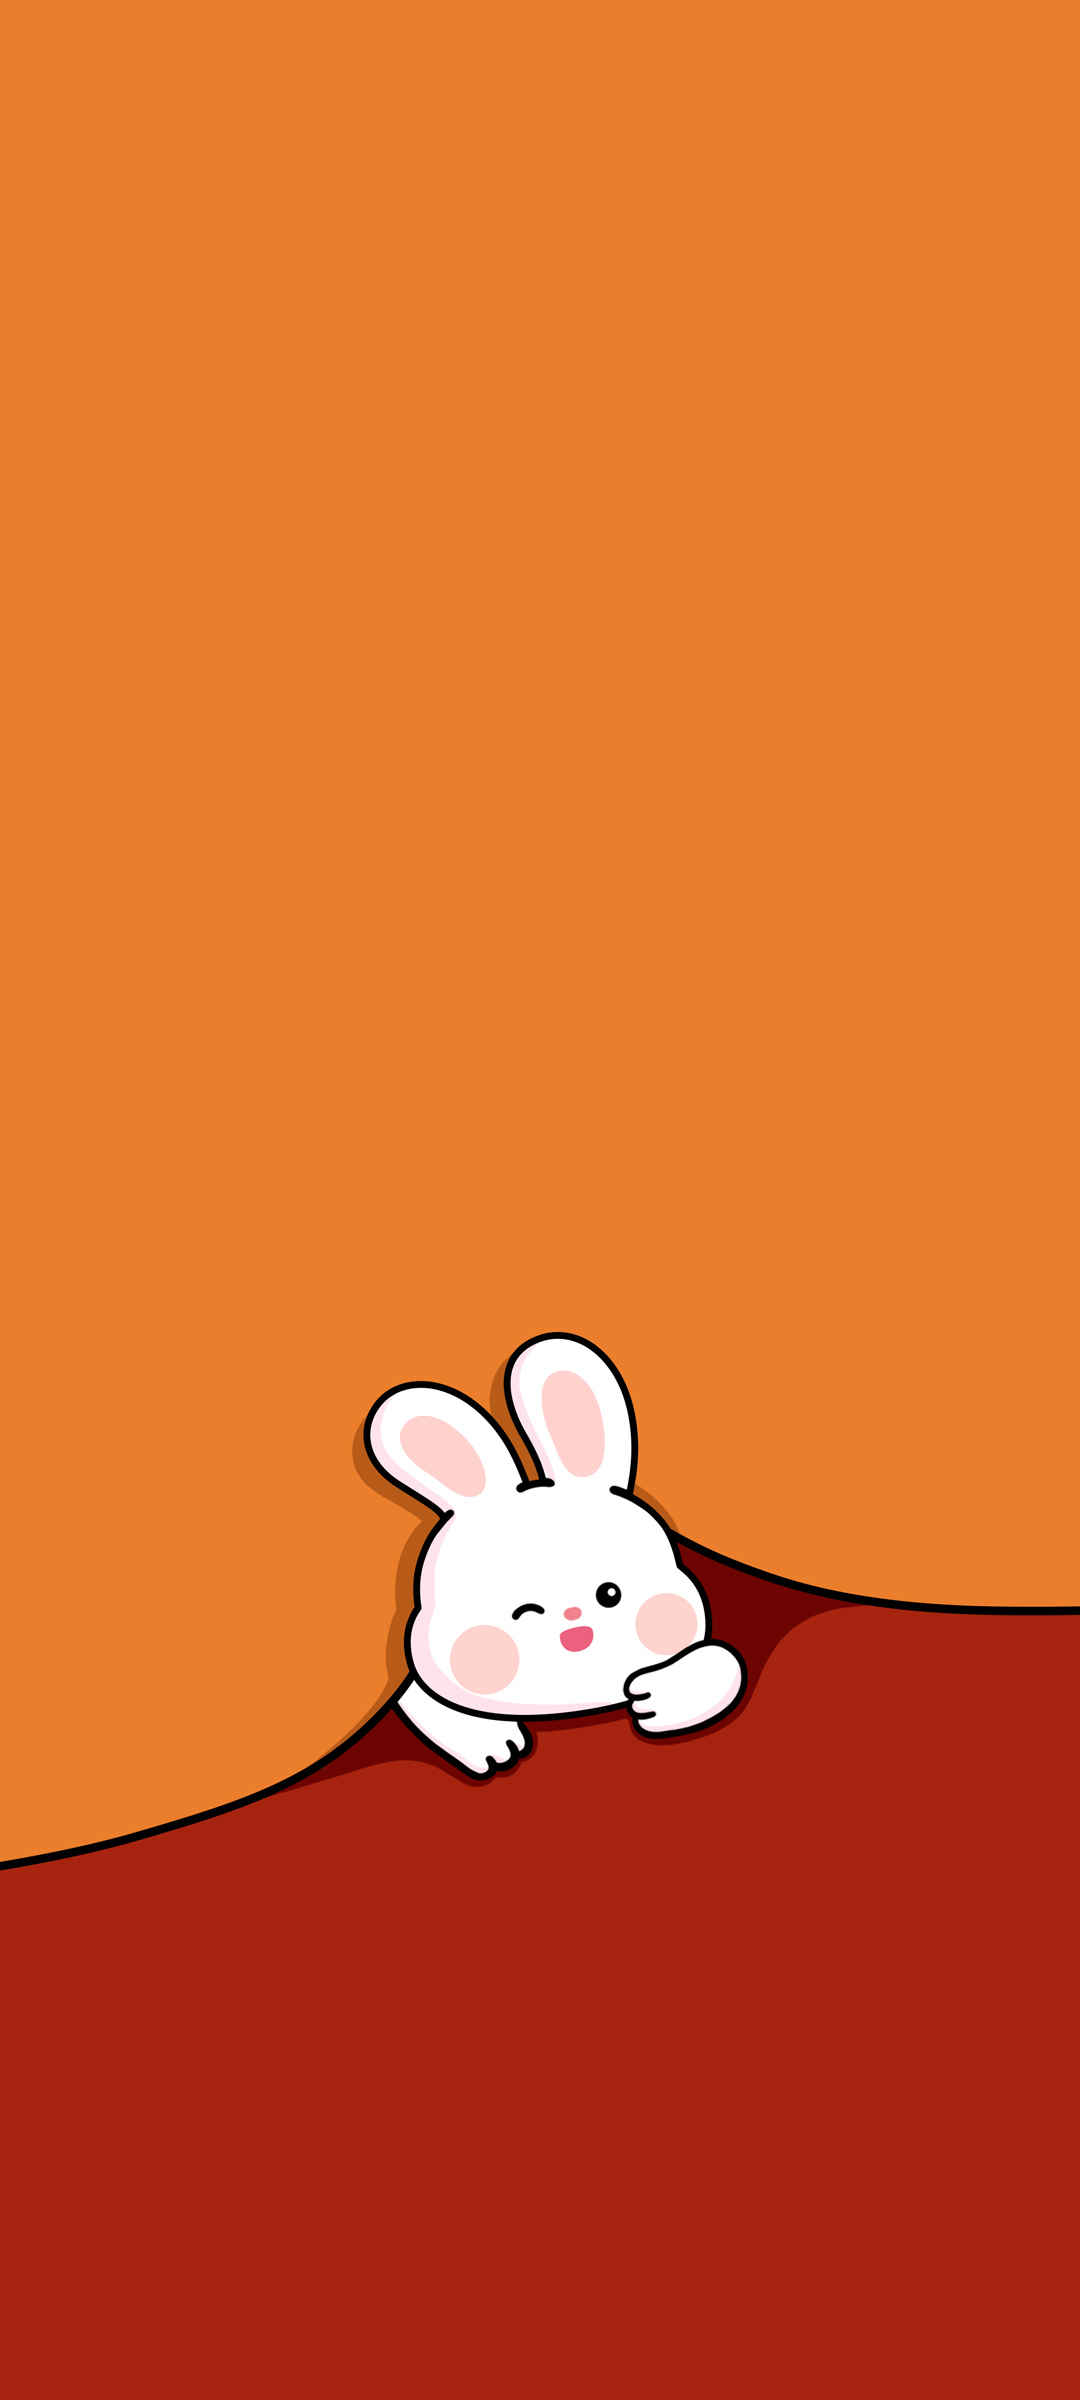 可爱小兔子 卡通 手机 壁纸-